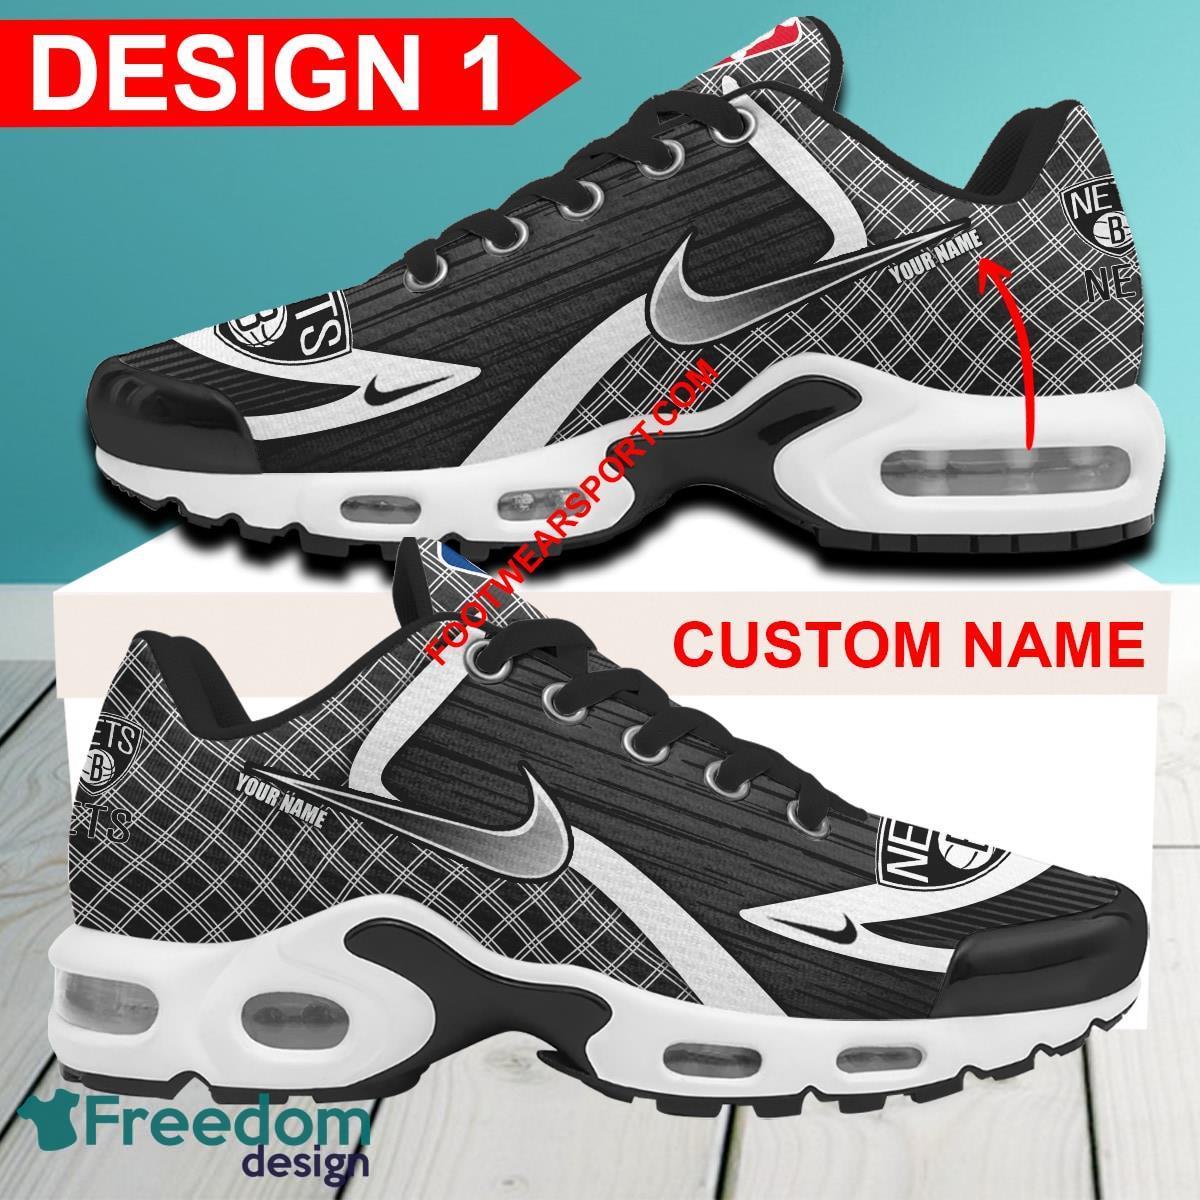 Custom Name NBA Brooklyn Nets Air Cushion Sport Shoes TN Sneakers All Over Print - NBA Brooklyn Nets Air Cushion Sport Shoes Style 1 TN Sneakers